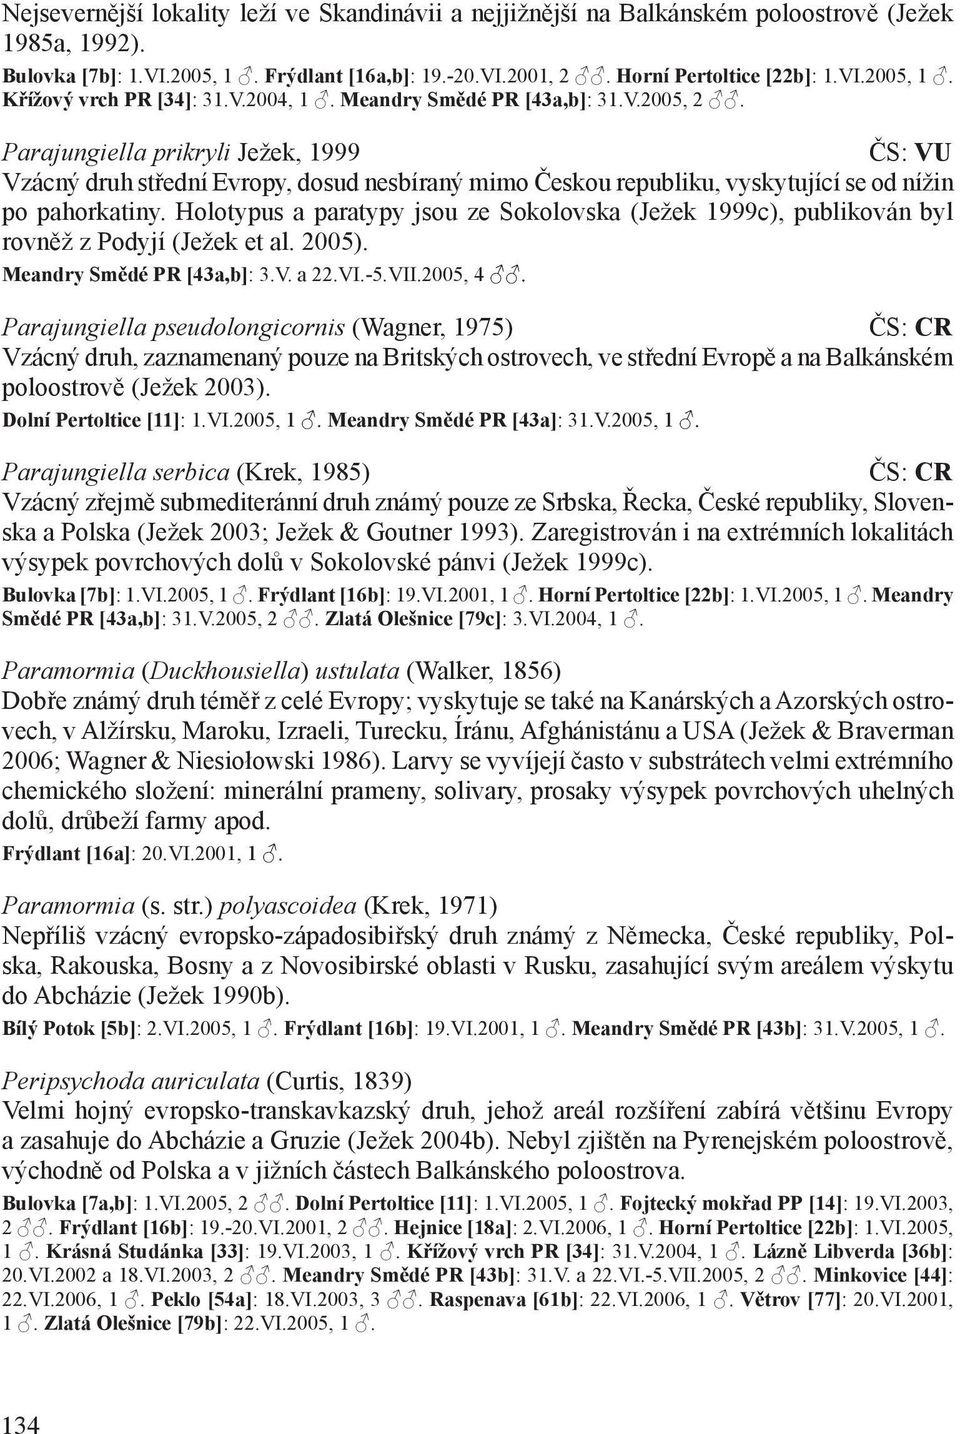 Holotypus a paratypy jsou ze Sokolovska (Ježek 1999c), publikován byl rovněž z Podyjí (Ježek et al. 2005). Meandry Smědé PR [43a,b]: 3.V. a 22.VI.-5.VII.2005, 4.